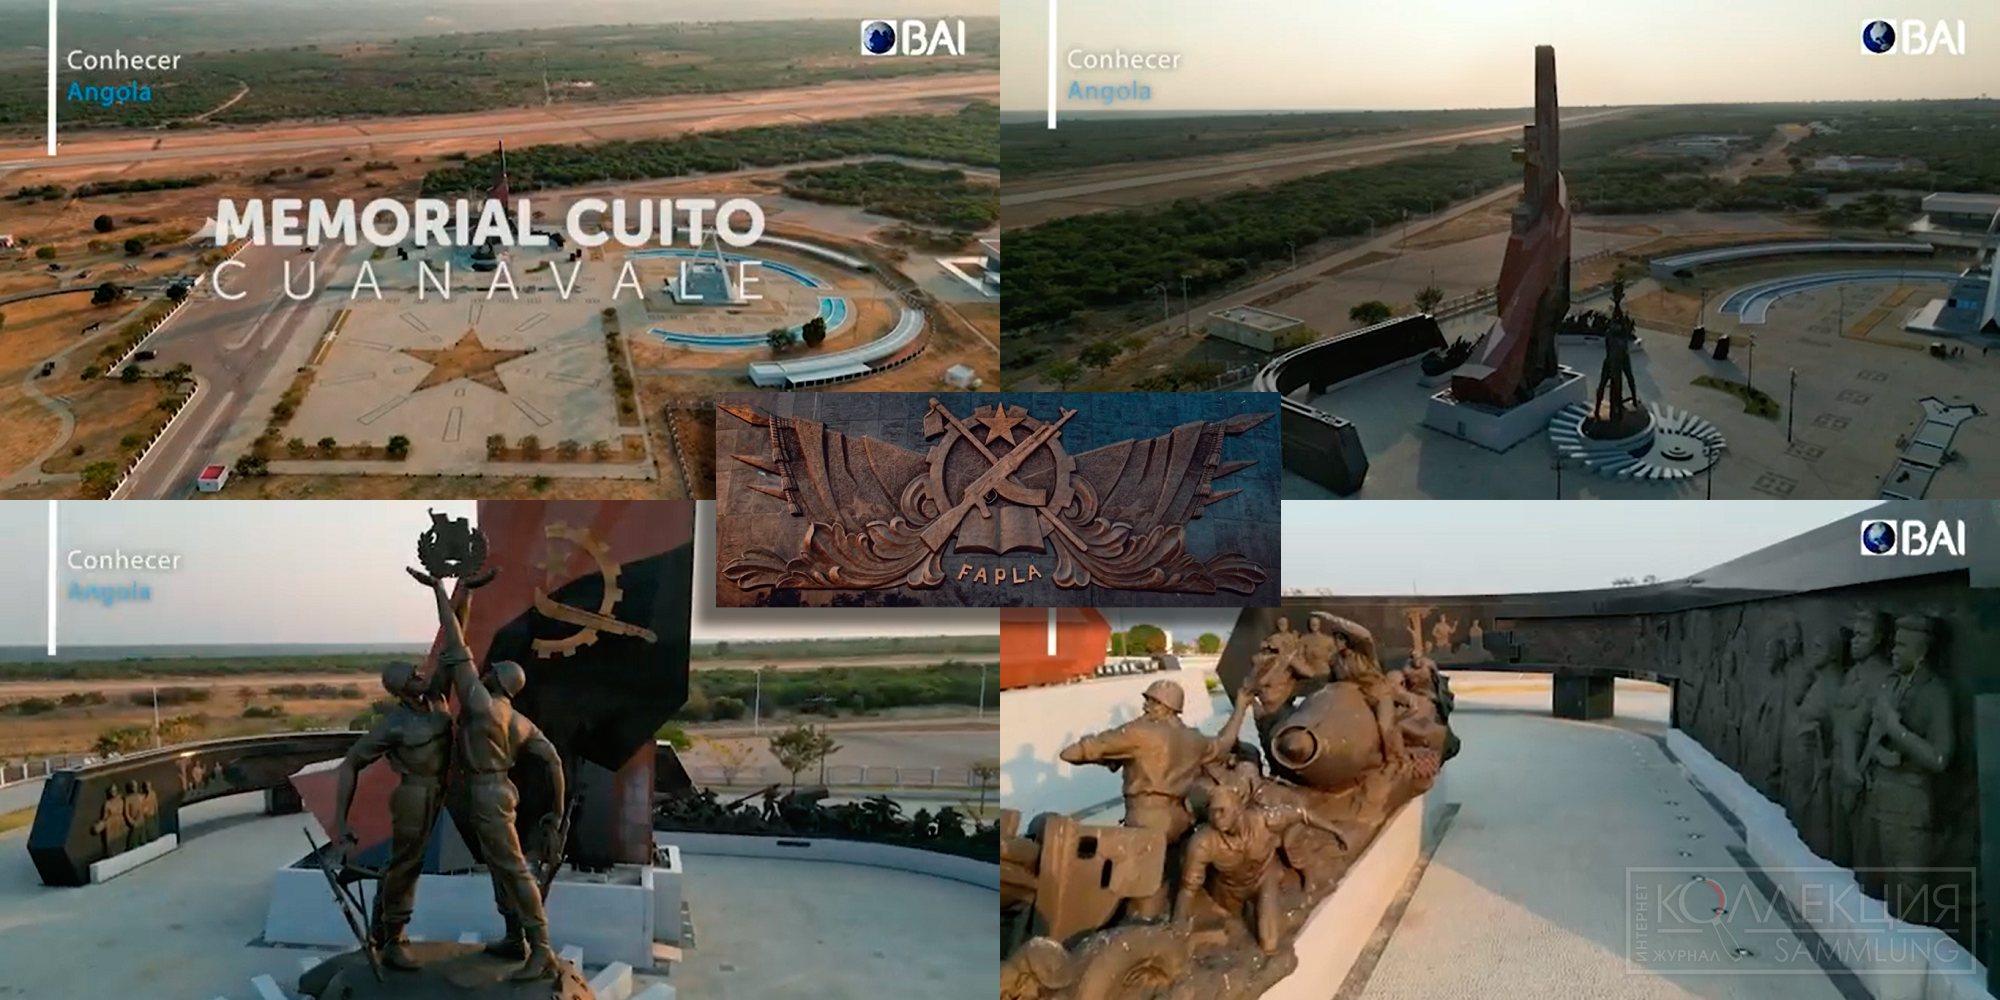 Мемориал Куито Куановале.. Кадры из ролика Banco BAI «Vamos conhecer a história do Memorial da Batalha do Cuito Cuanavale»